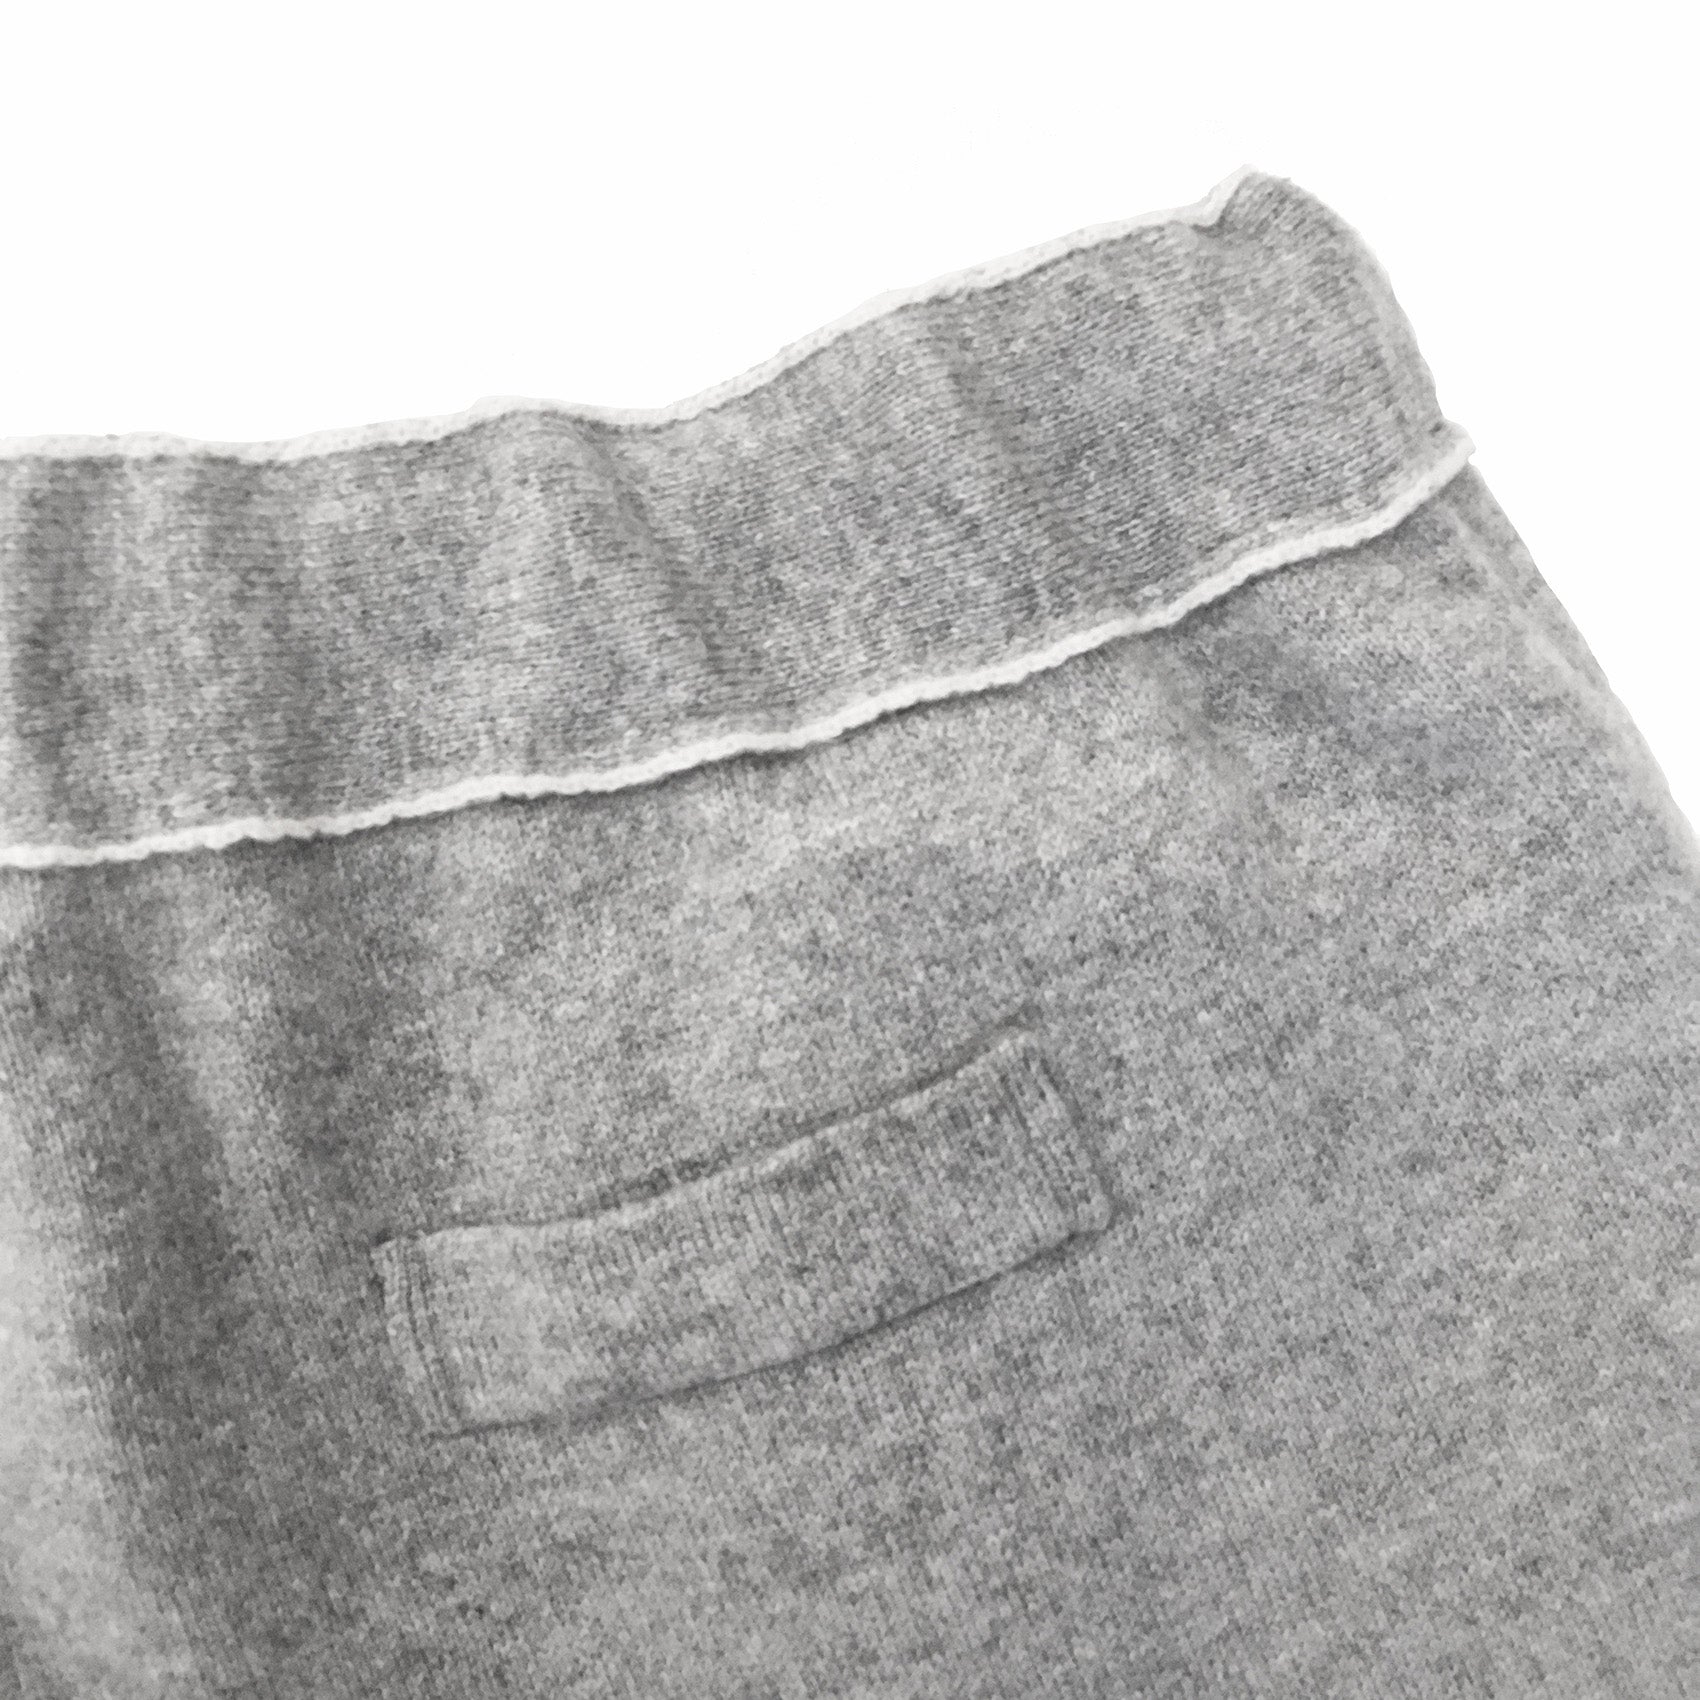 Allegro Double Knit Cashmere Pants